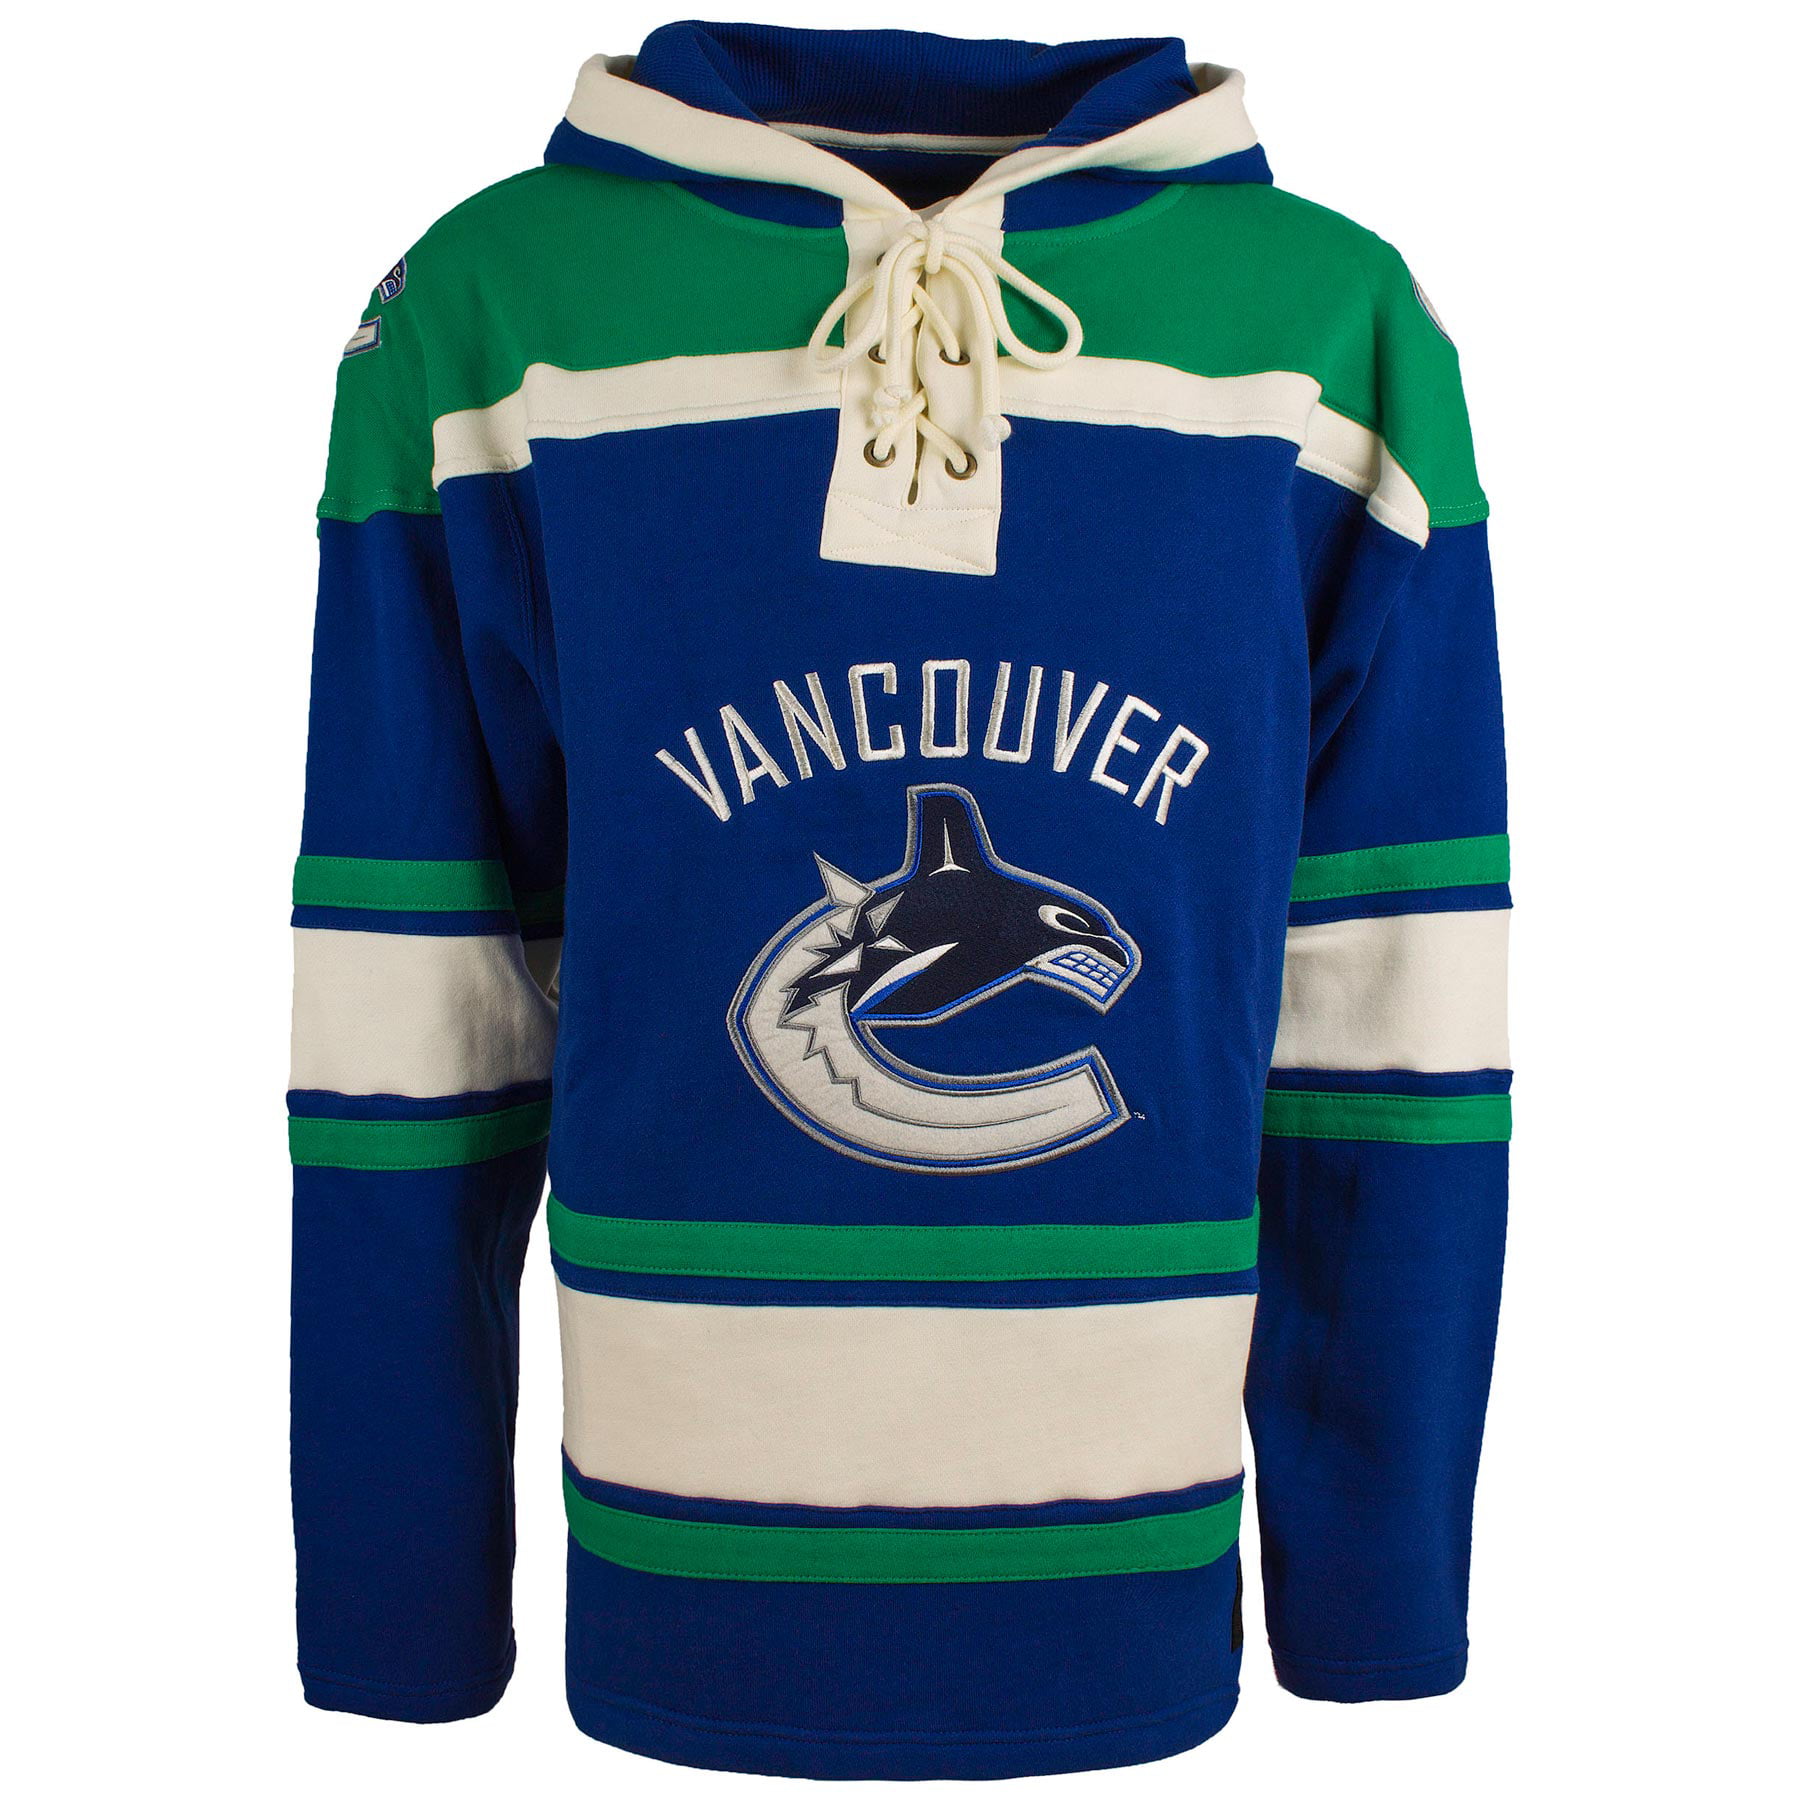 Vancouver Canucks Hockey Hoodie, Blank Canucks Hoodie Jersey